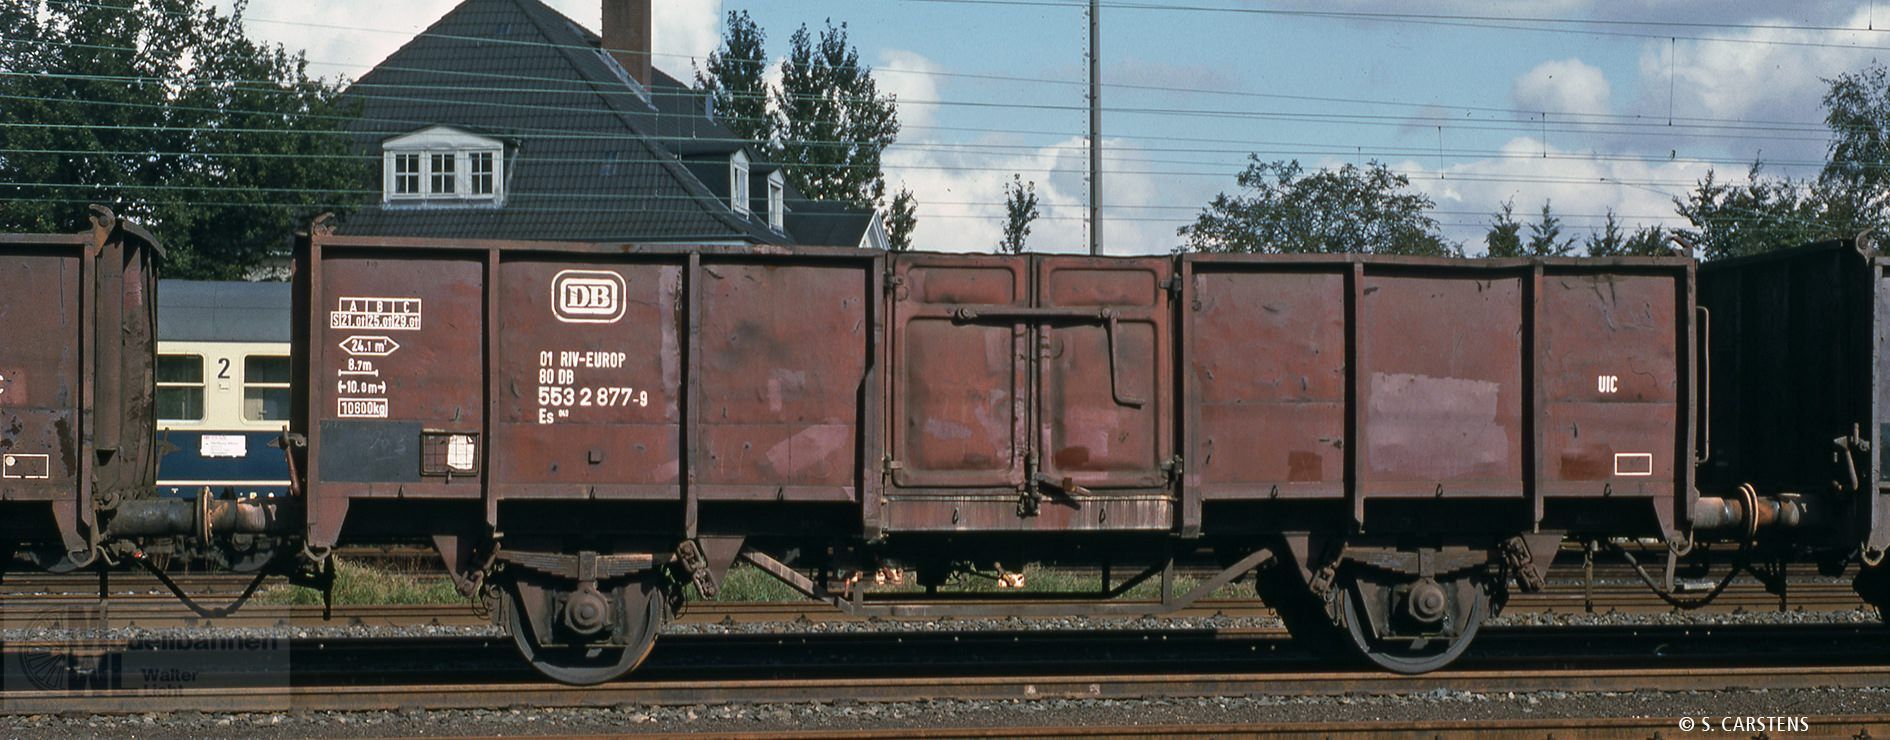 Brawa 50064 - Güterwagen offen DB Ep.IV Es045 01 80 553 2 877-9 H0/GL